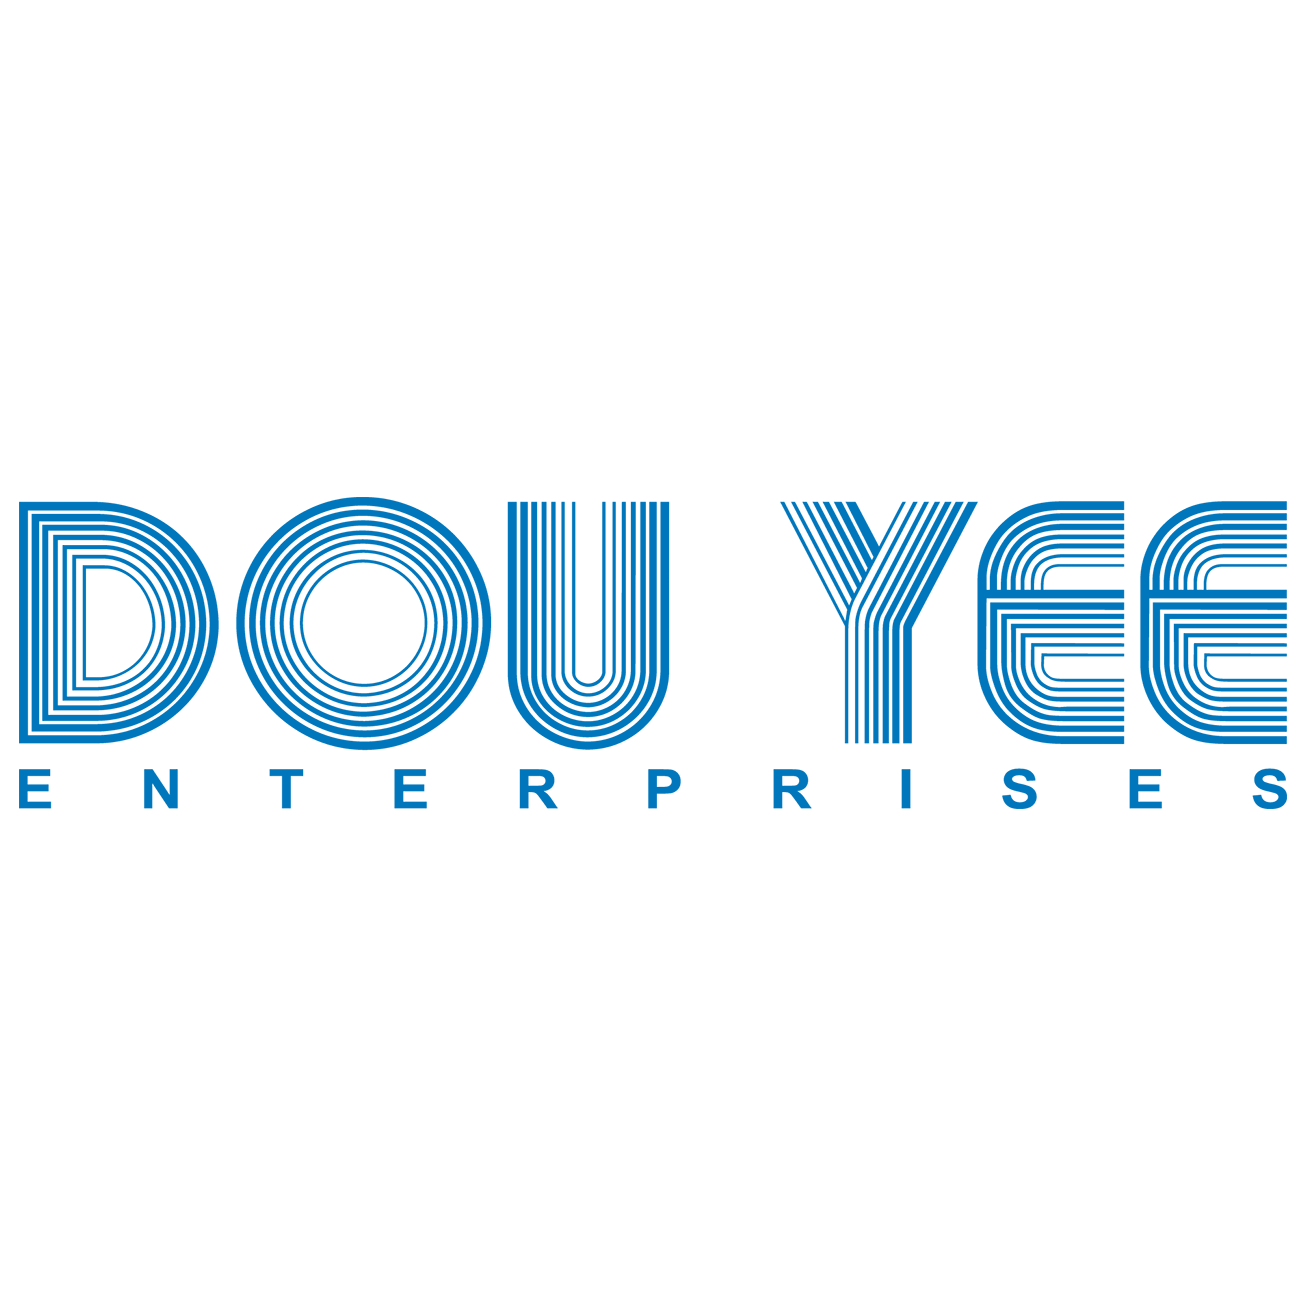 Dou Yee Enterprises (s) Pte Ltd